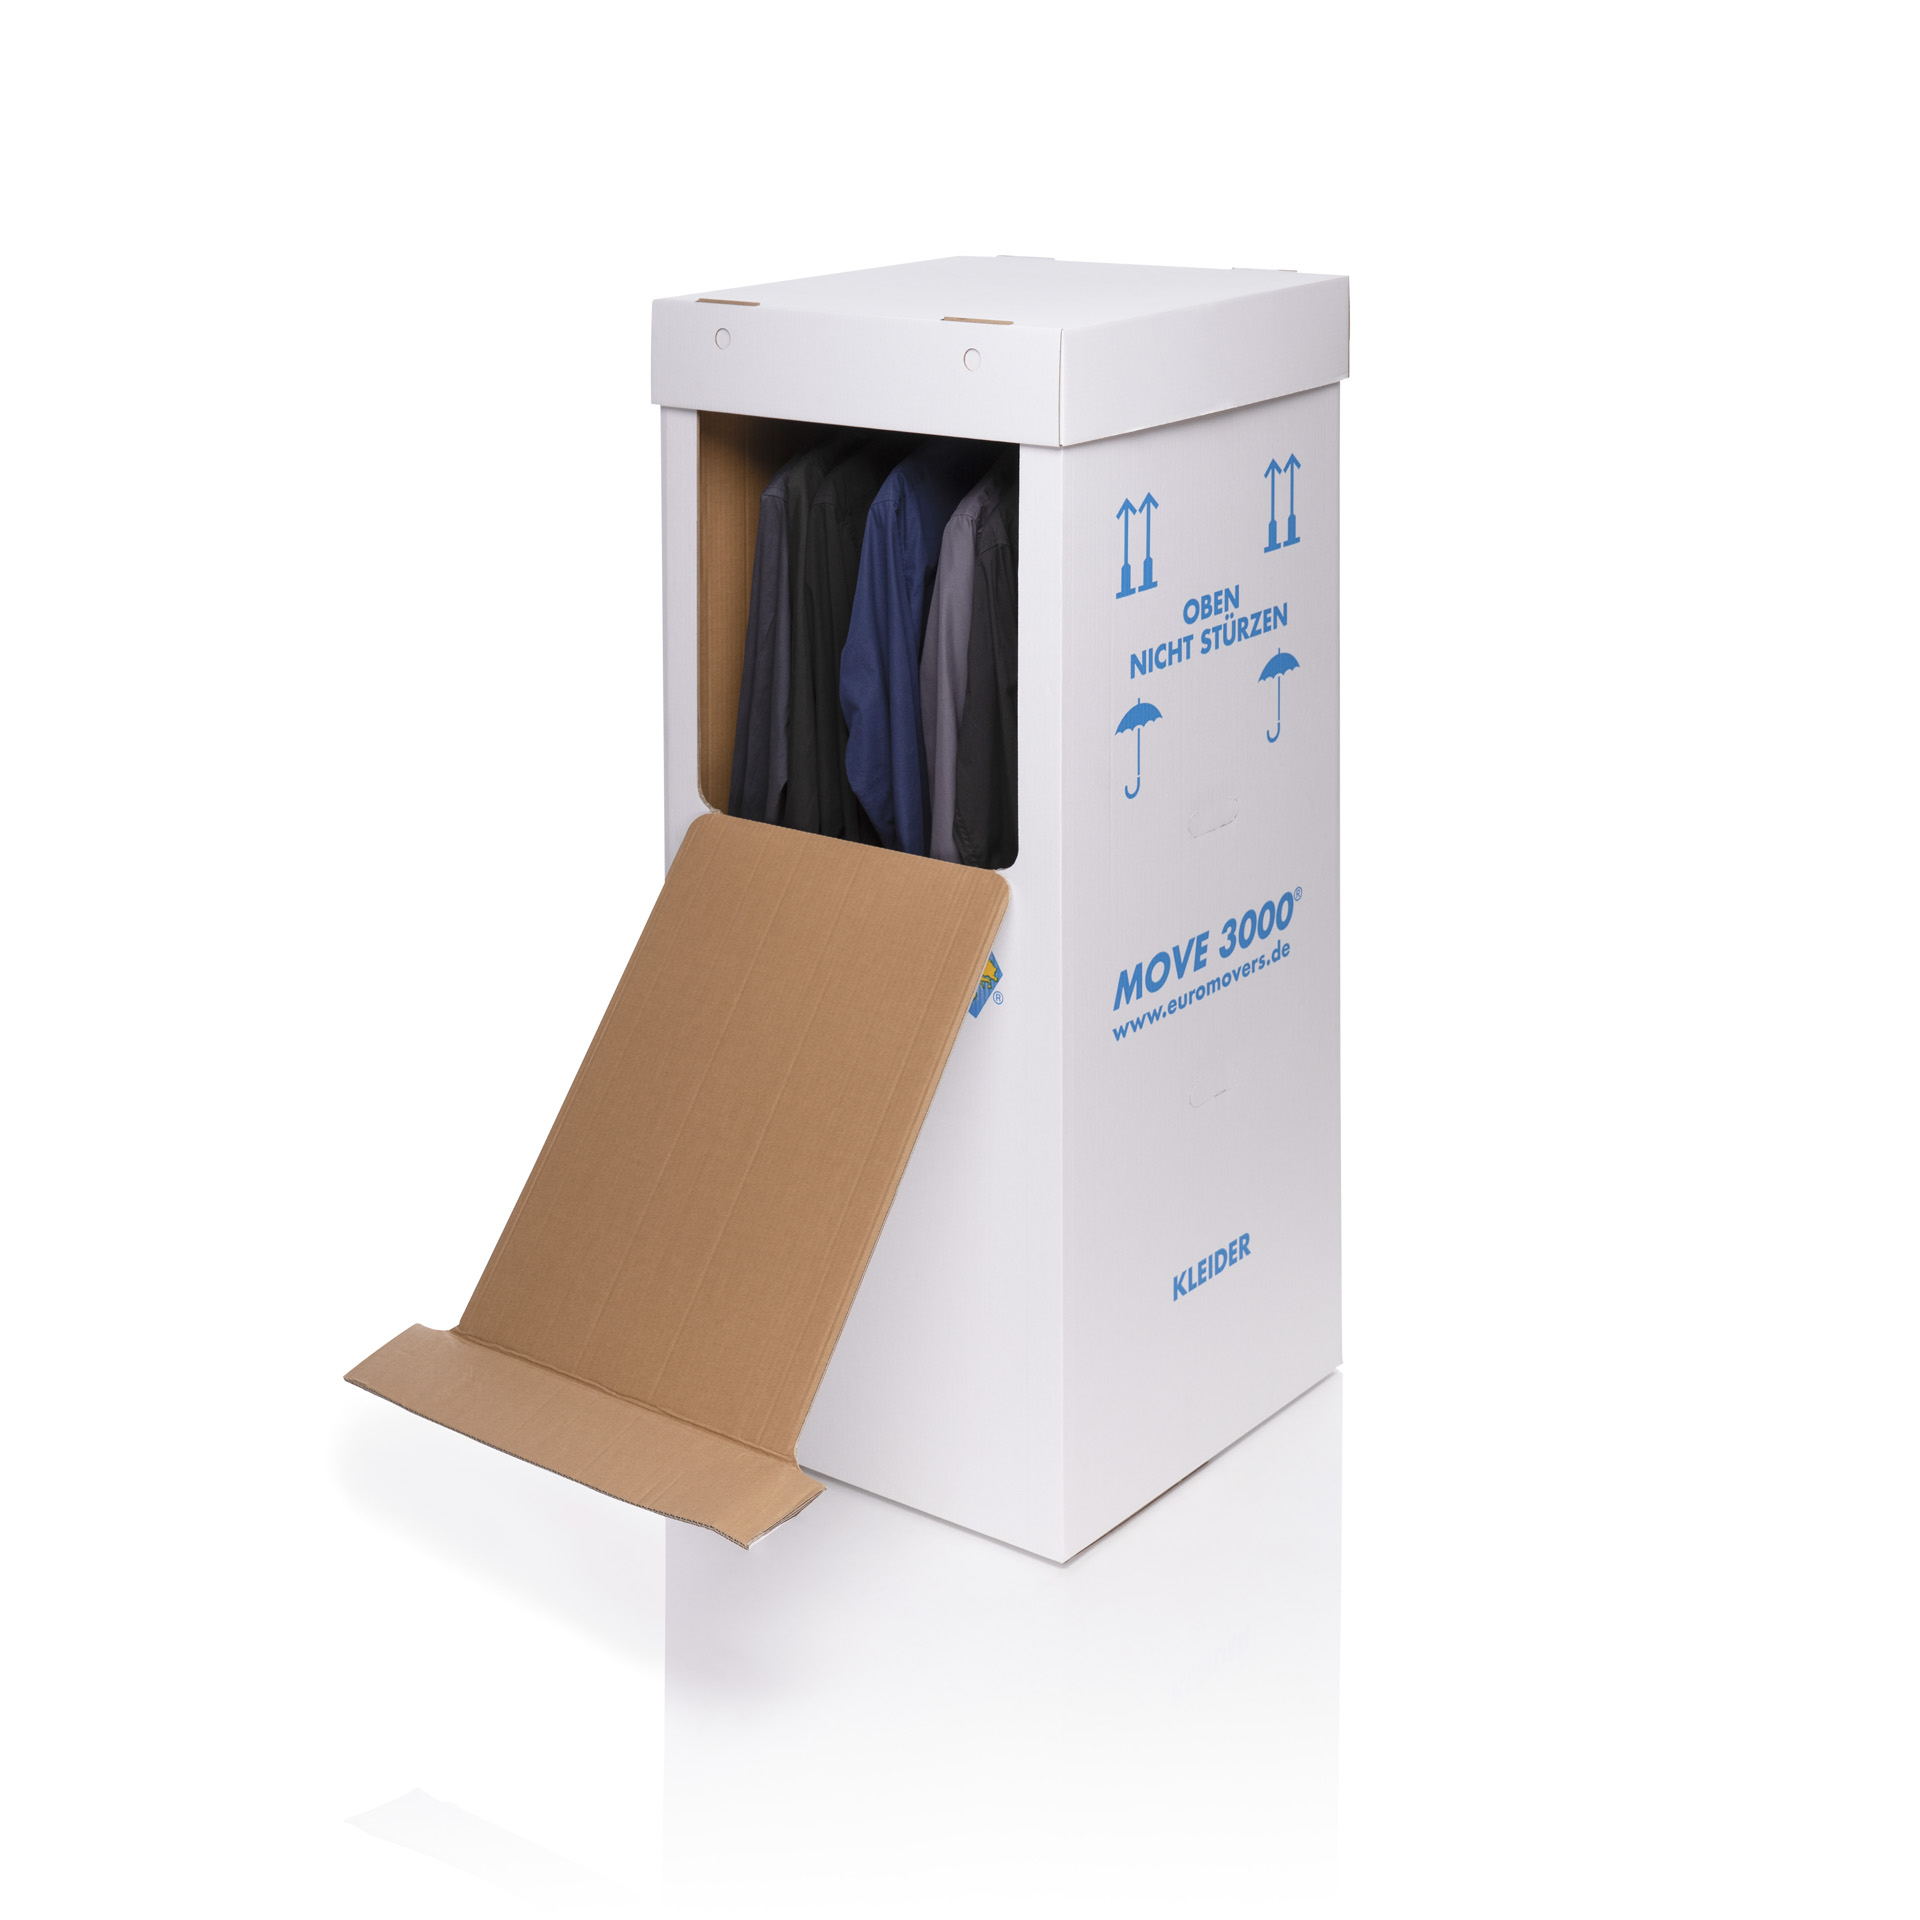 Kleiderkarton Spedition inkl. 60 cm Kleiderstange + Deckel, mit Platz für bis zu 20 Kleiderbügel